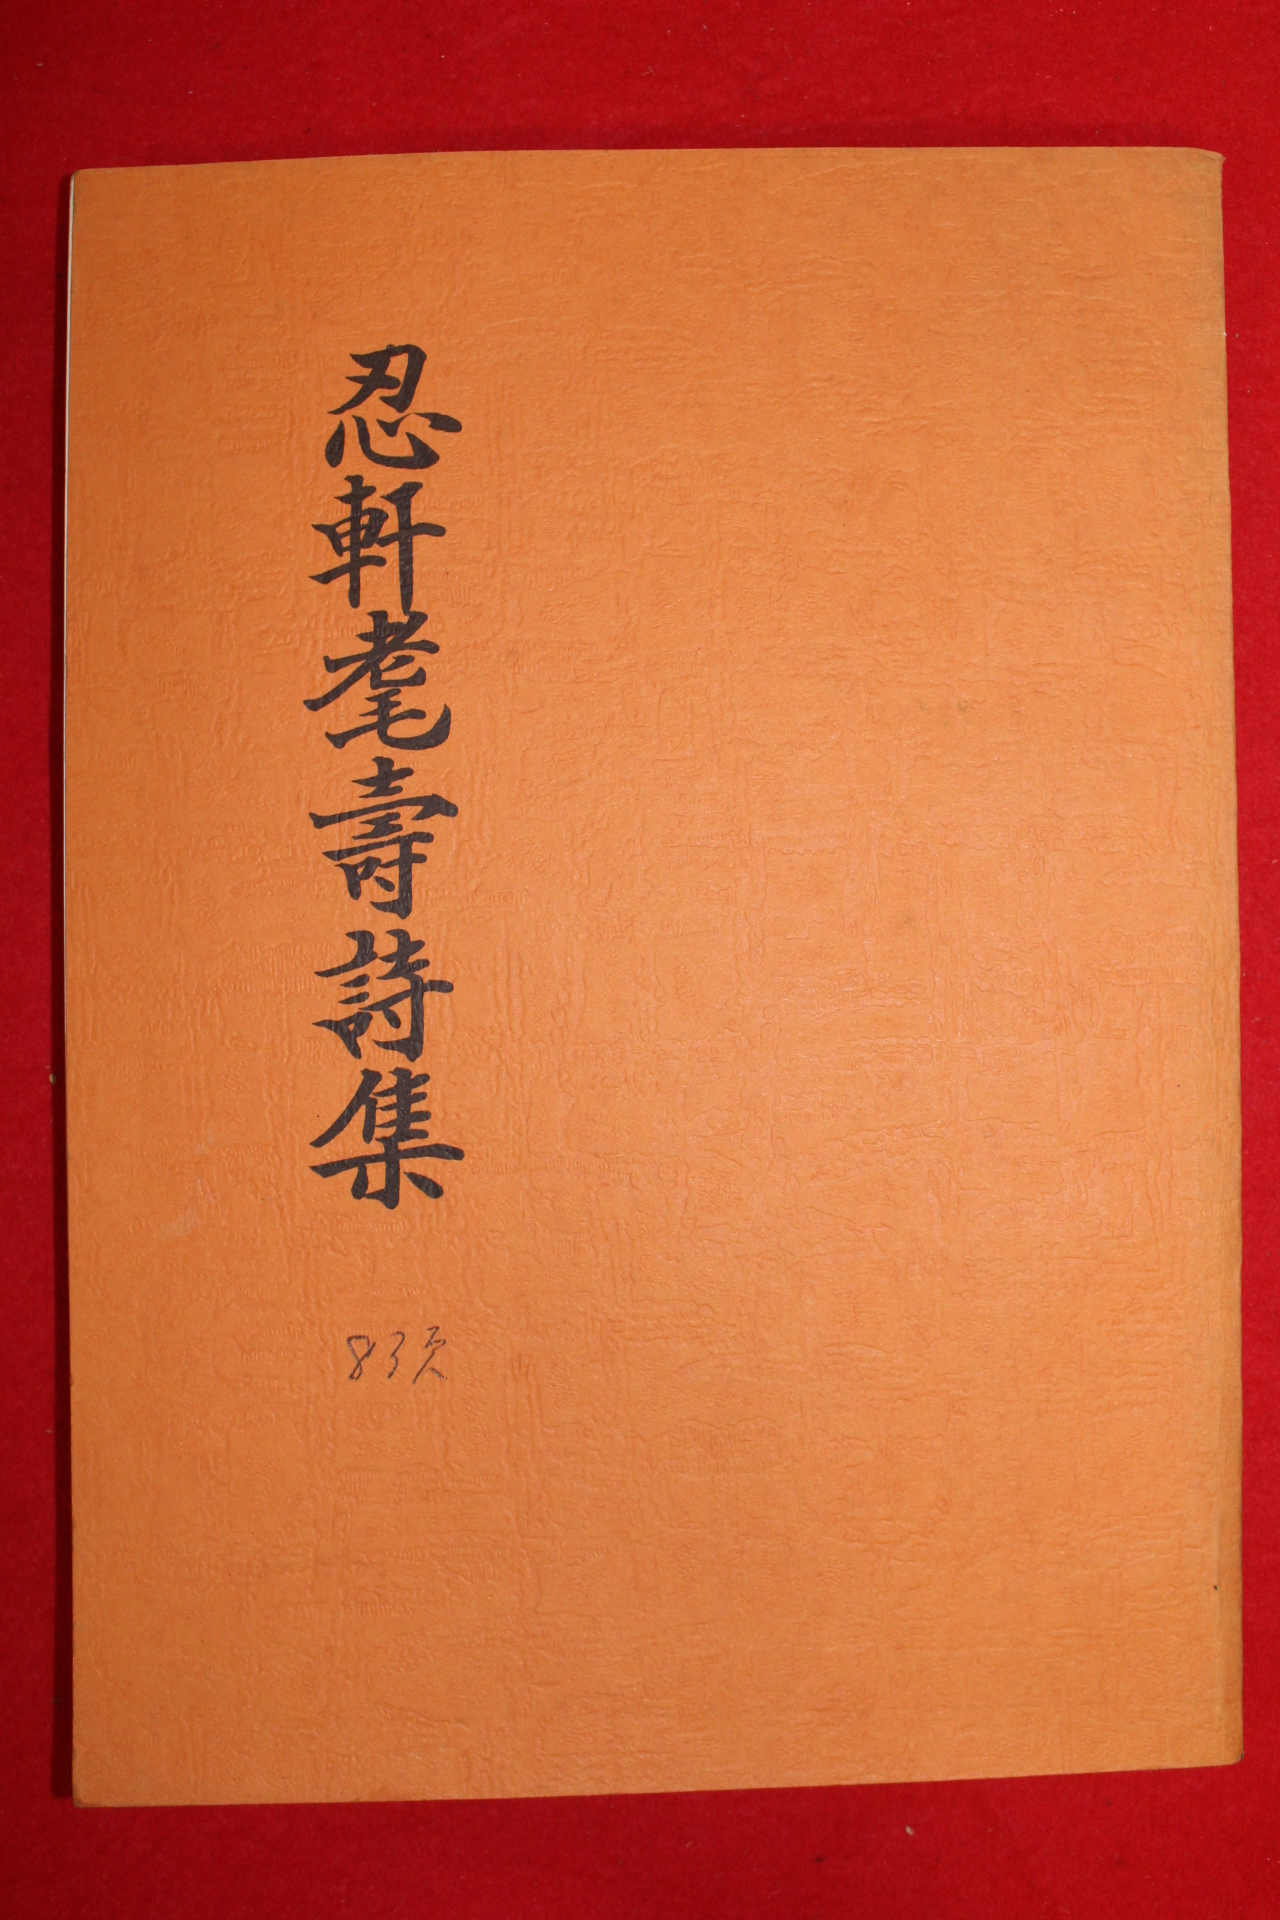 1986년 석판본 인헌모수시집(忍軒모壽詩集)